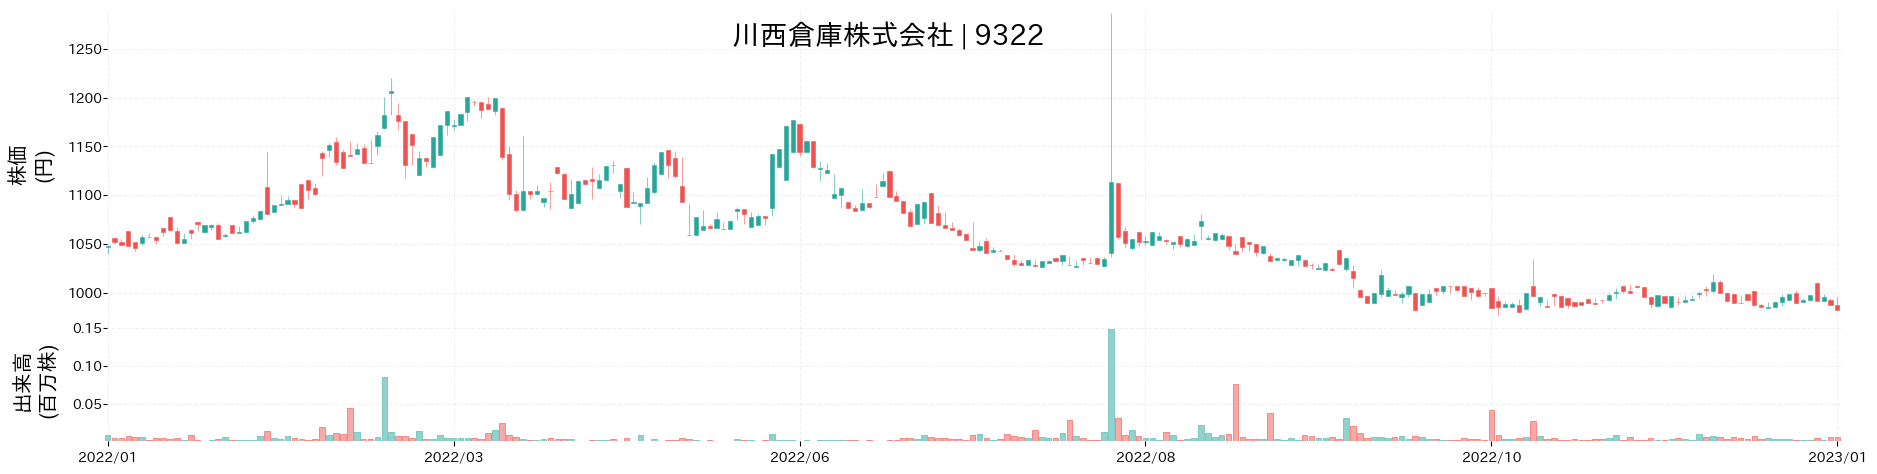 川西倉庫の株価推移(2022)